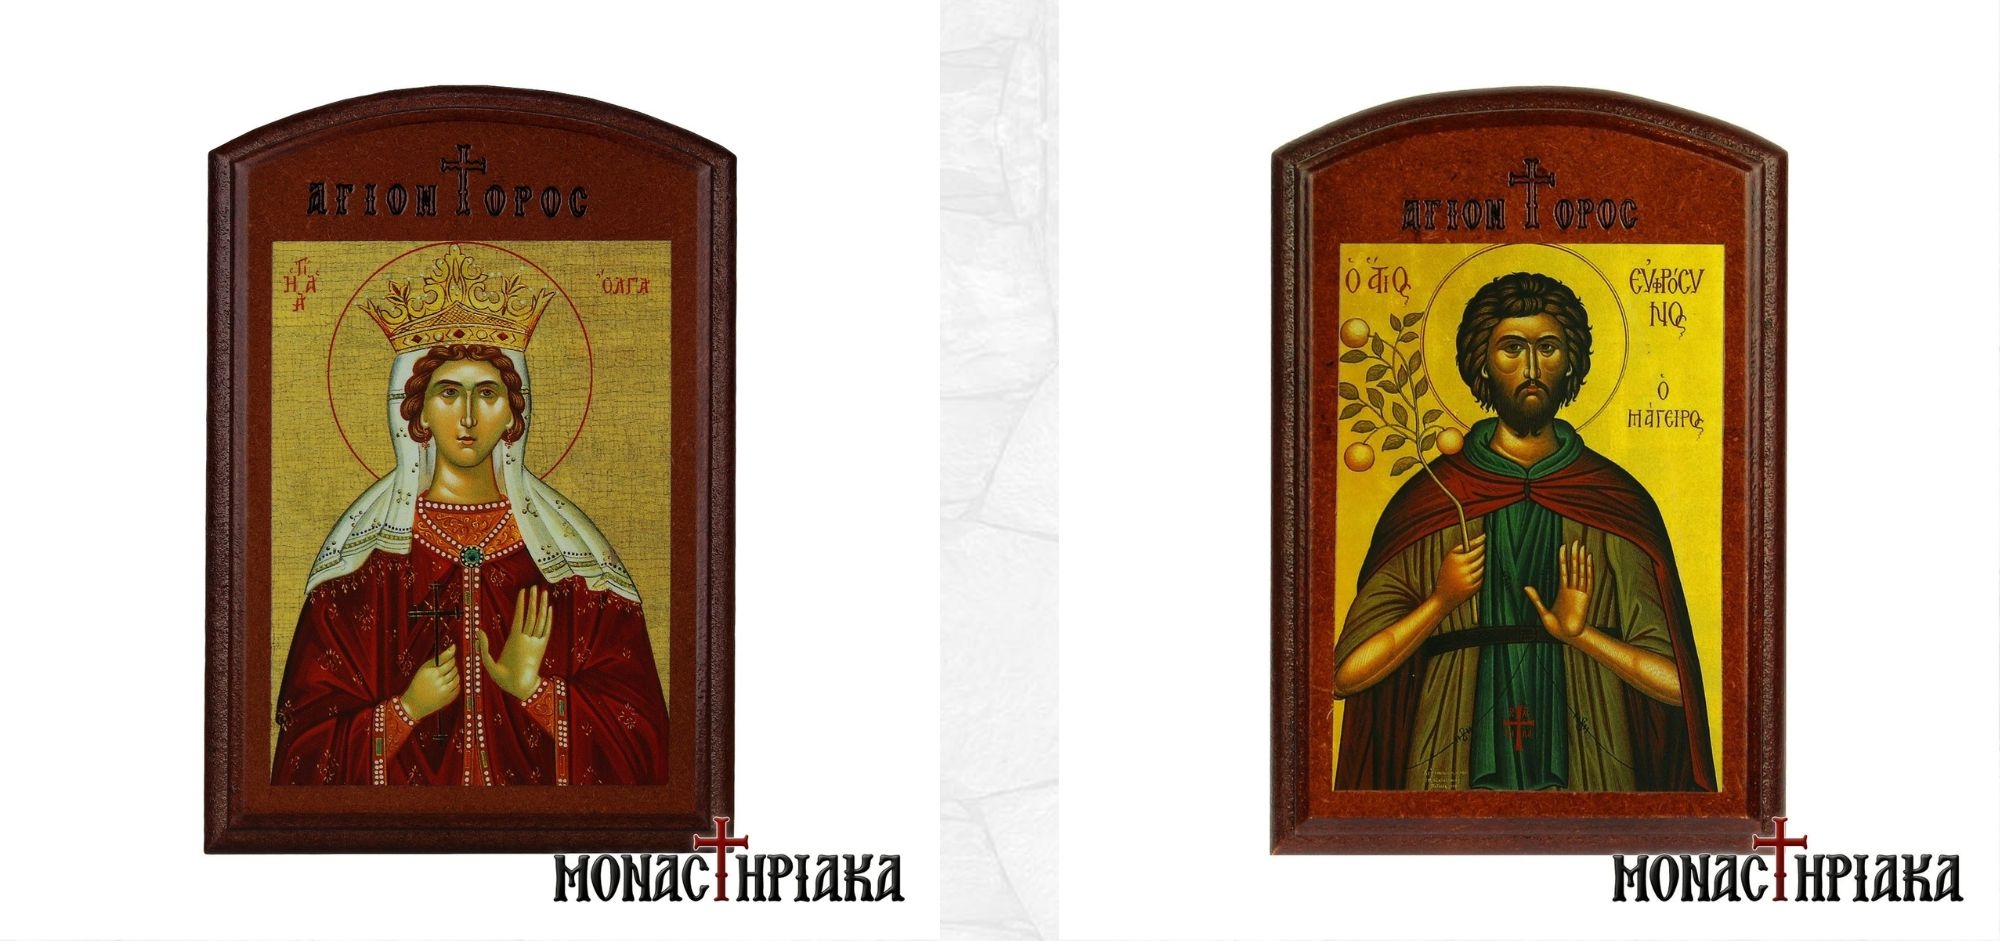 Saint Olga and Saint Euphrosynos